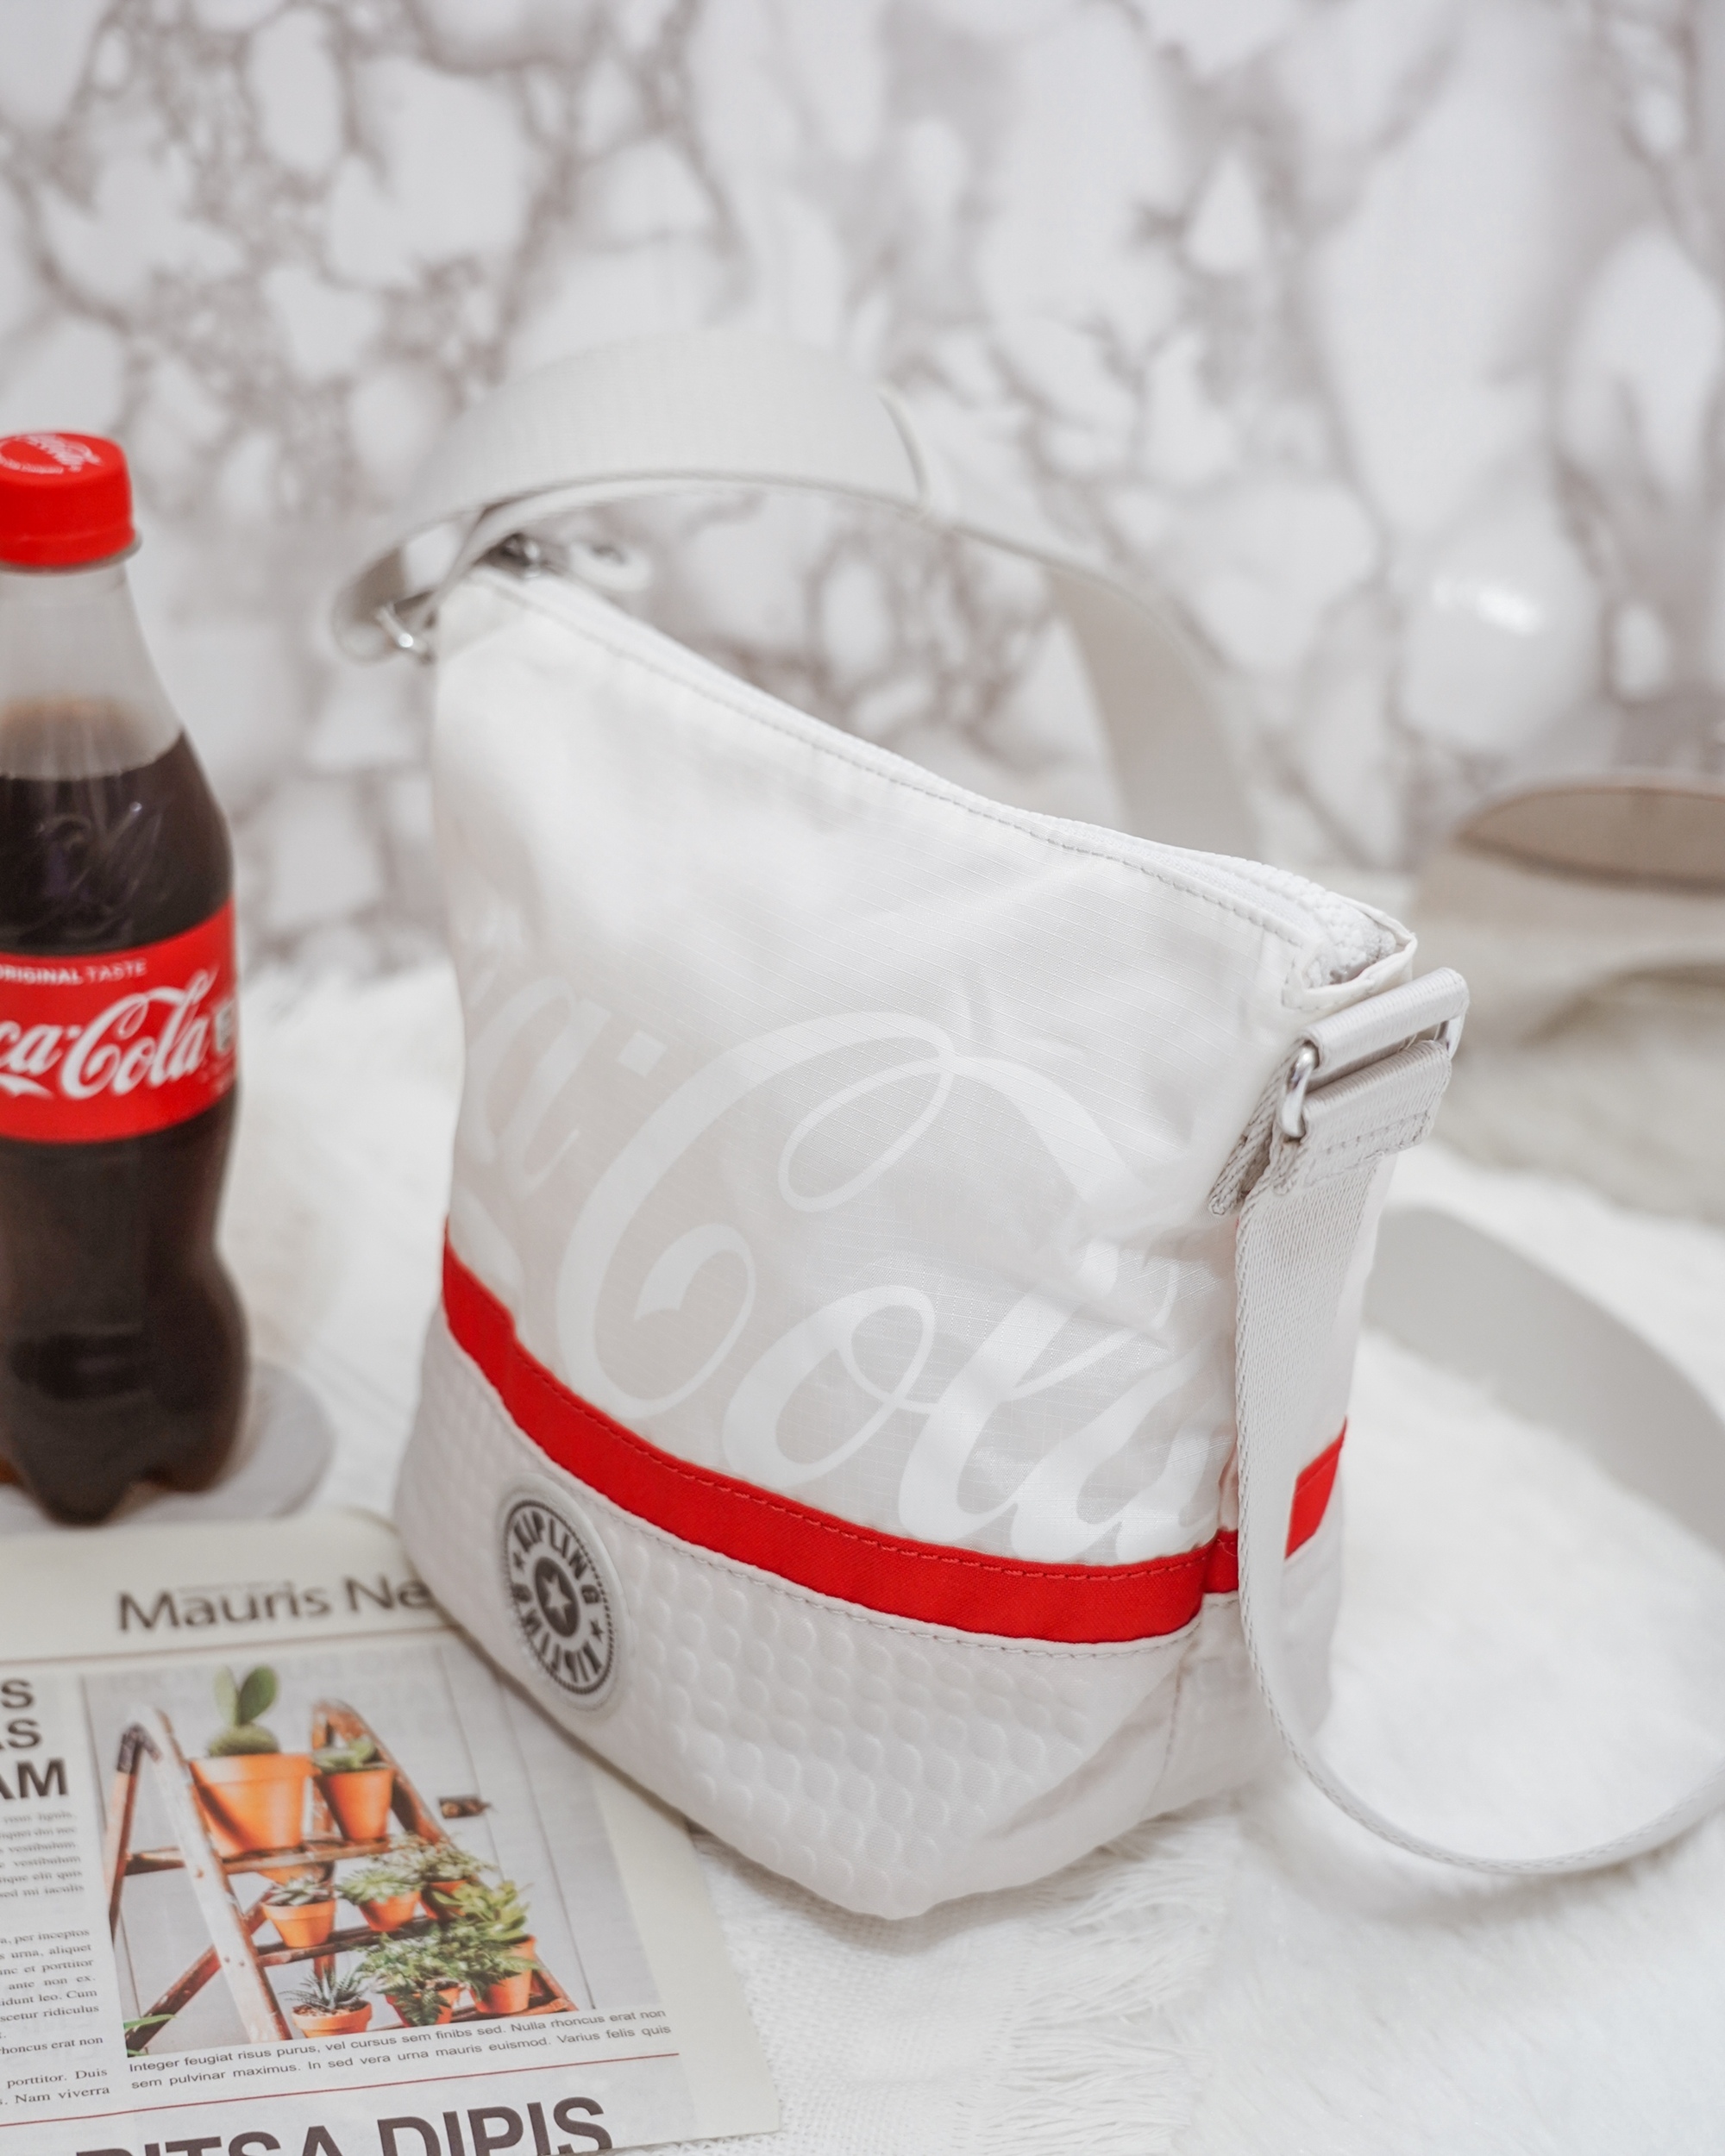 Kipling  Coca-Cola 聯名款 百搭包款 2021走春潮流單品推薦4.jpg